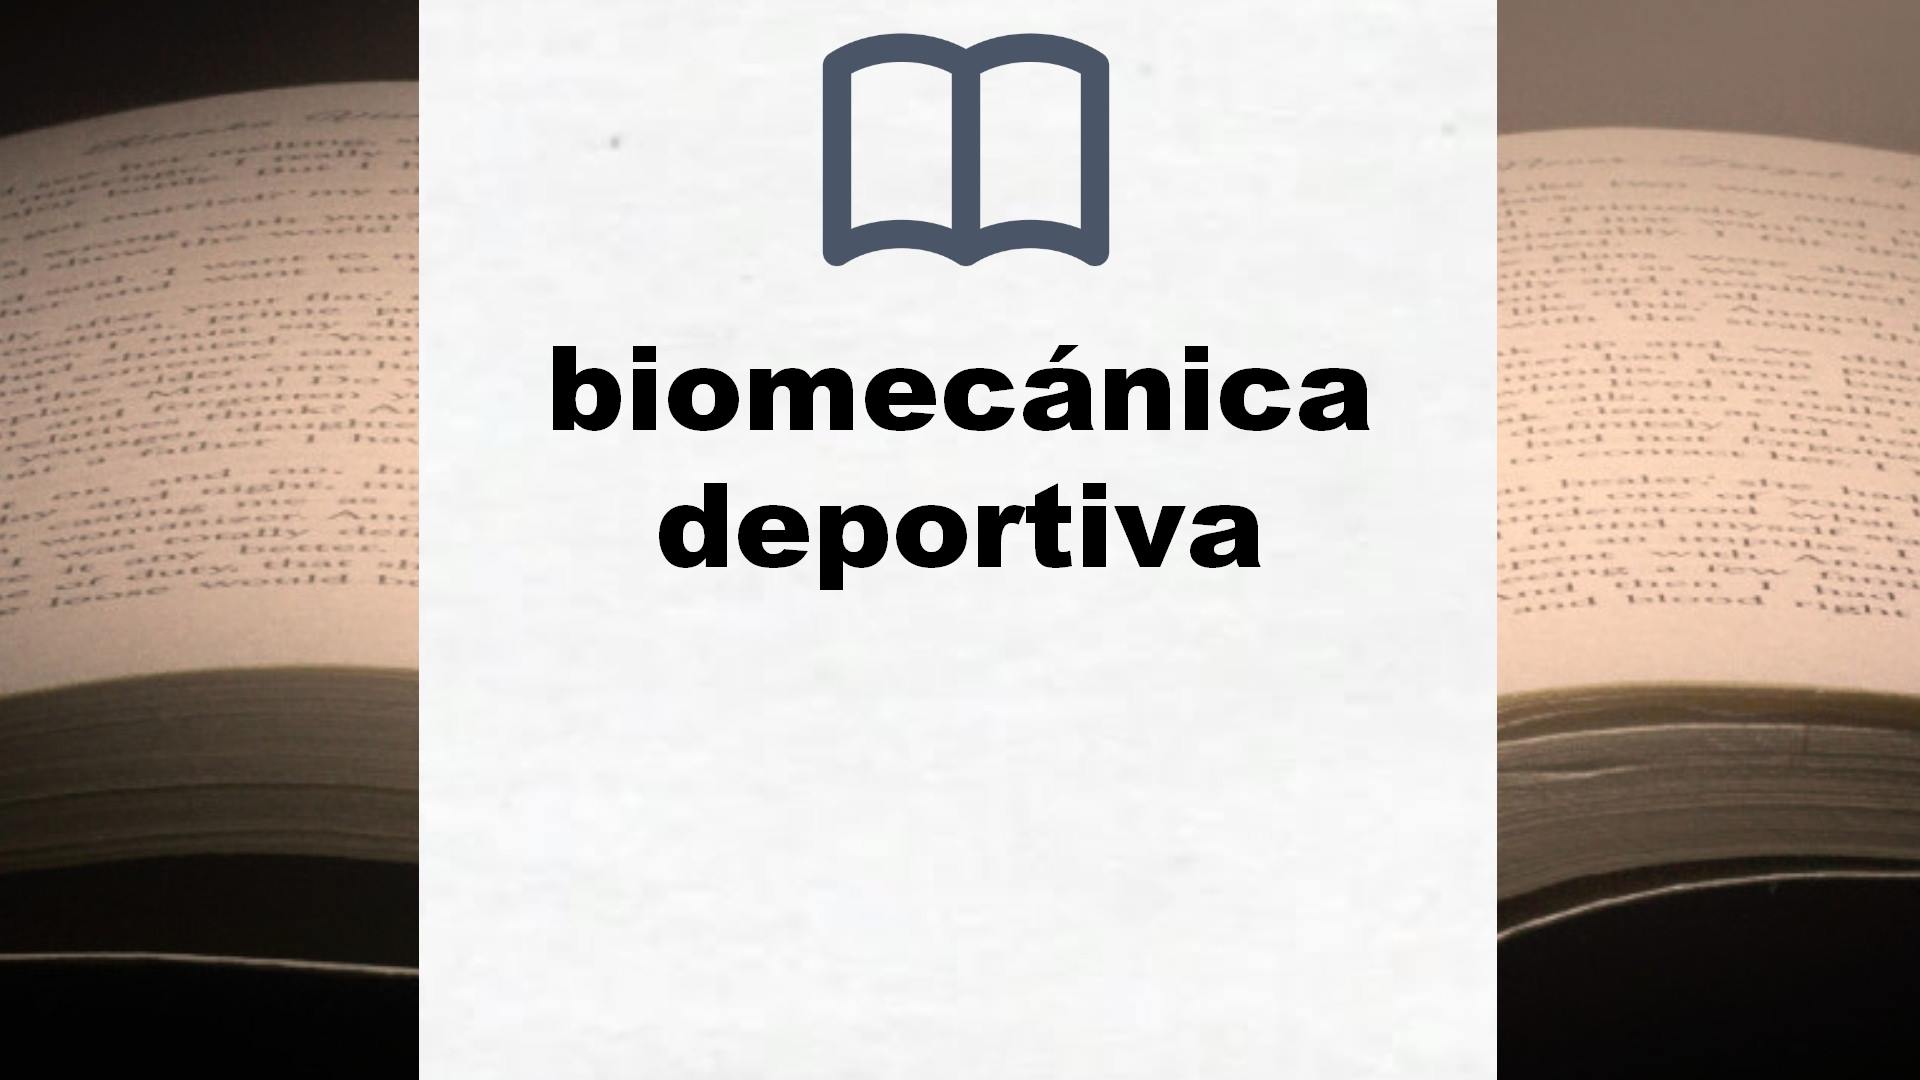 Libros sobre biomecánica deportiva